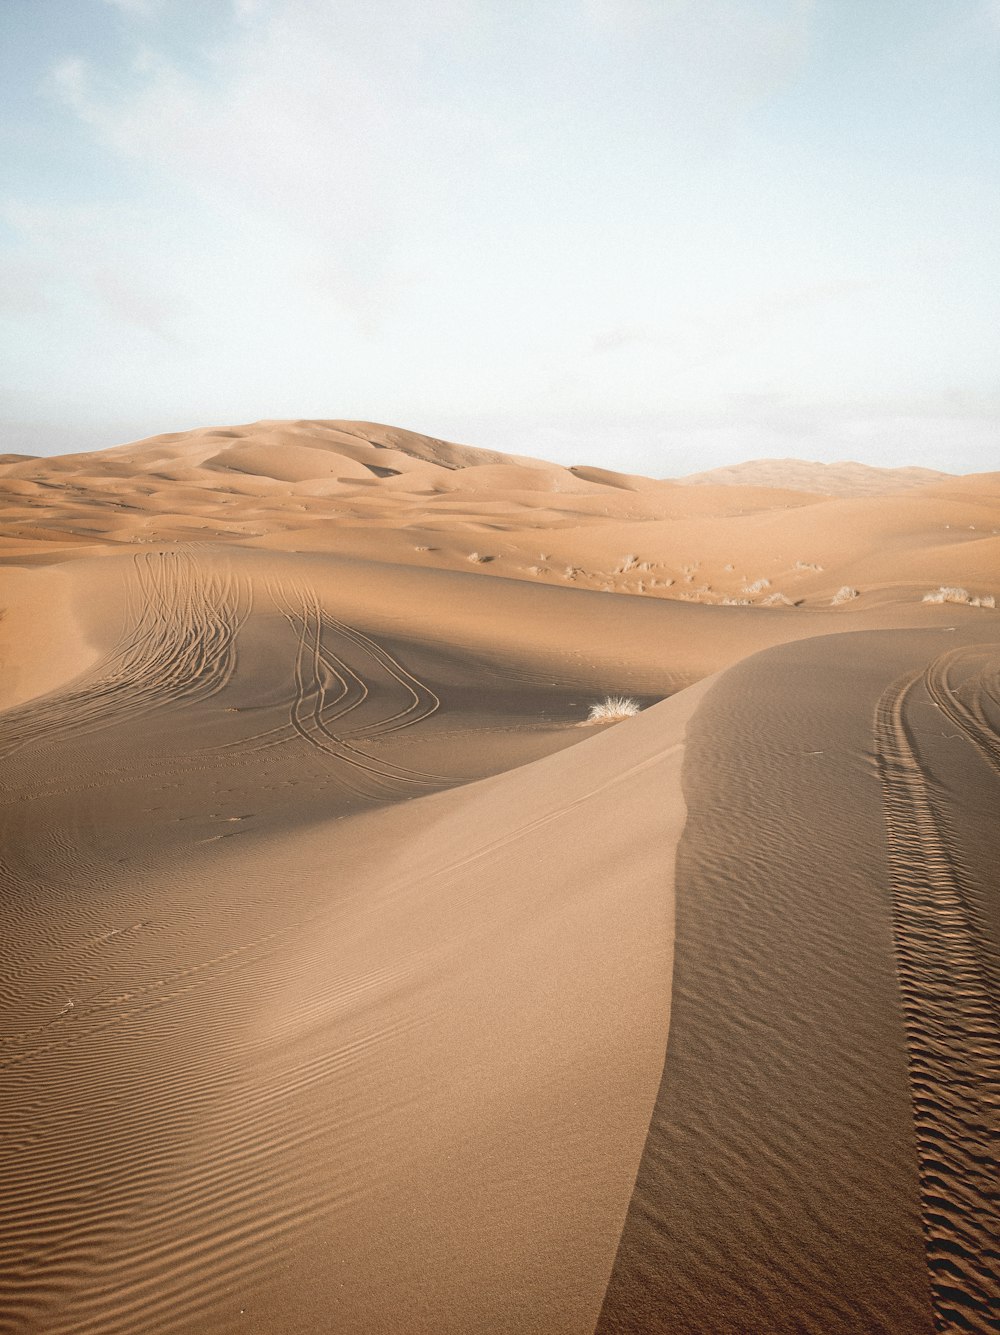 Dunes de sable brun sous un ciel bleu pendant la journée